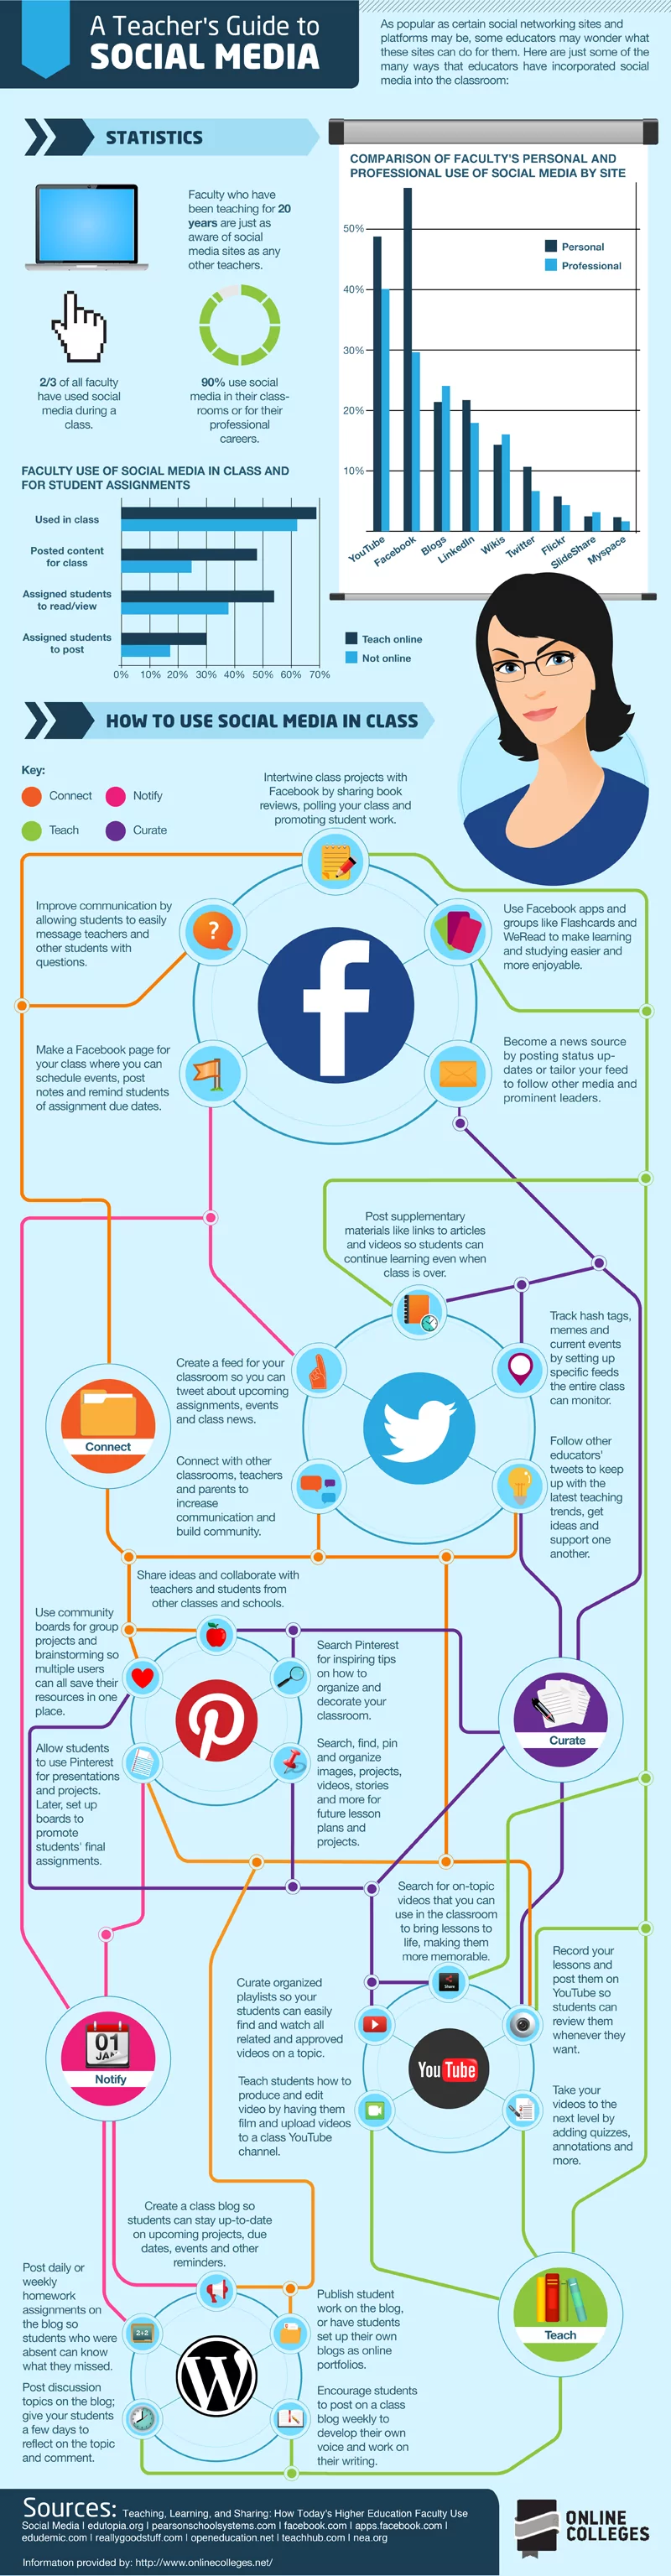 social media in education